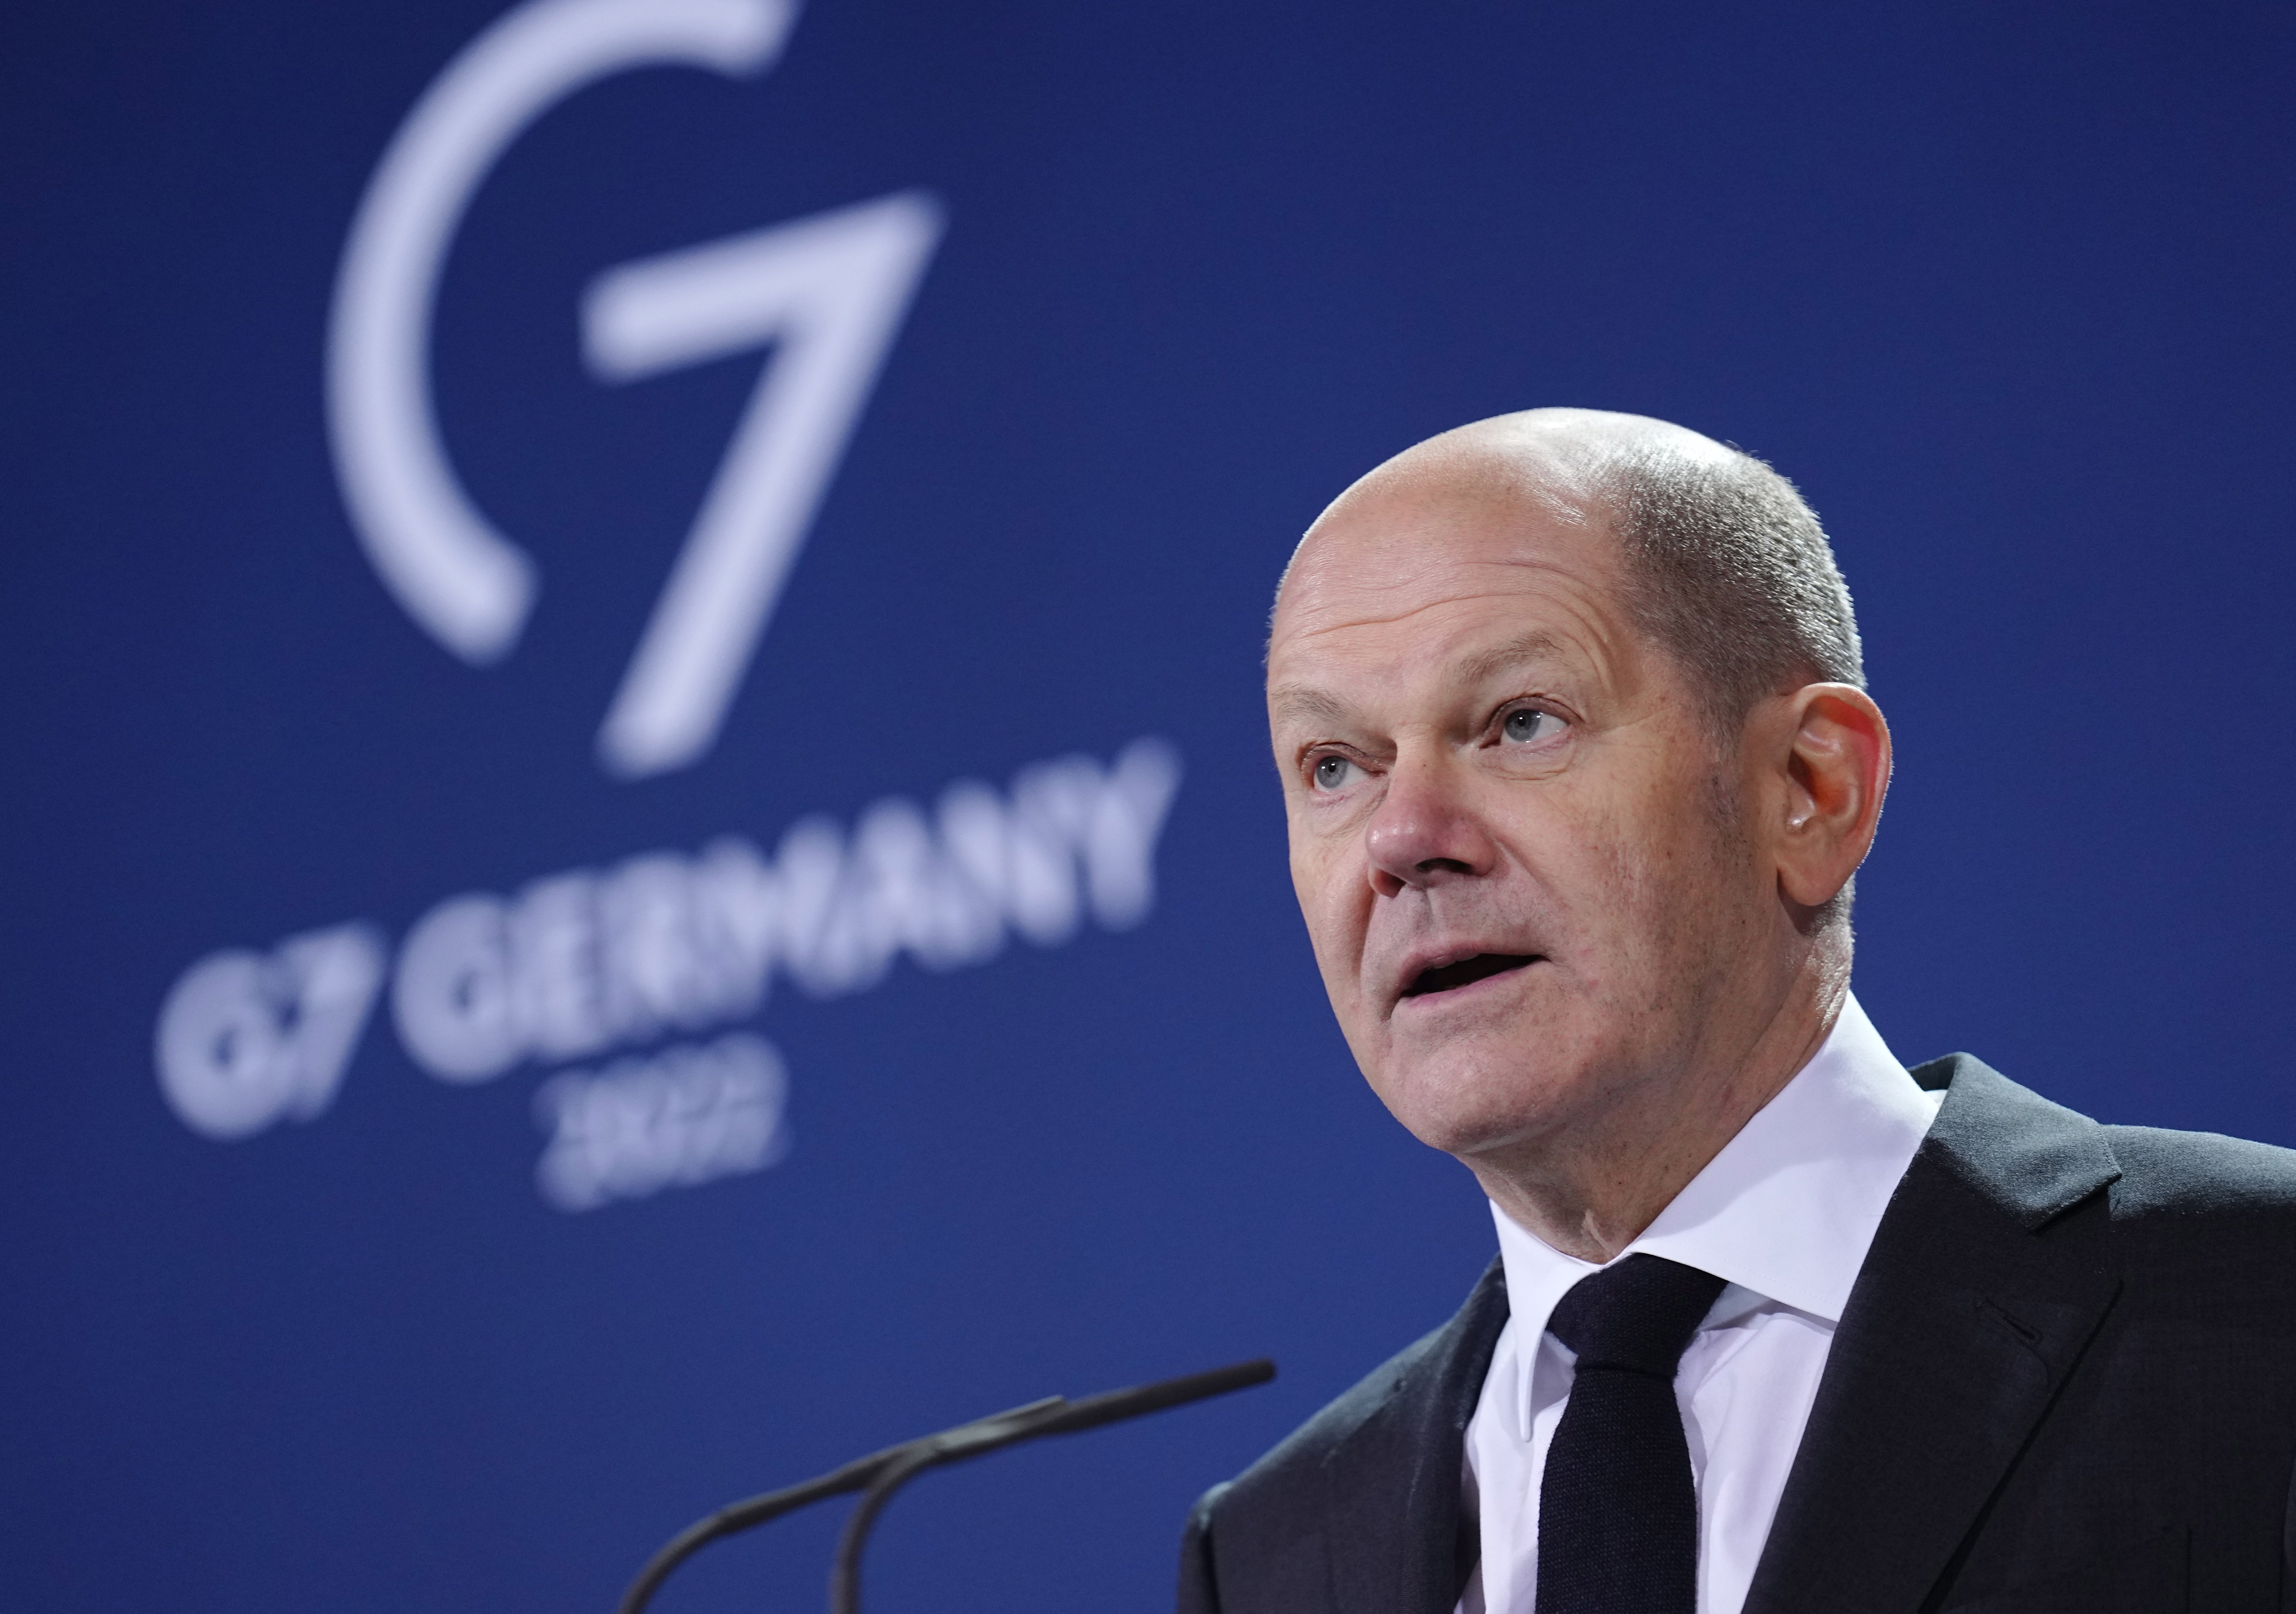 Alemania presiona contra las sanciones a Rusia: "Hace falta prudencia"